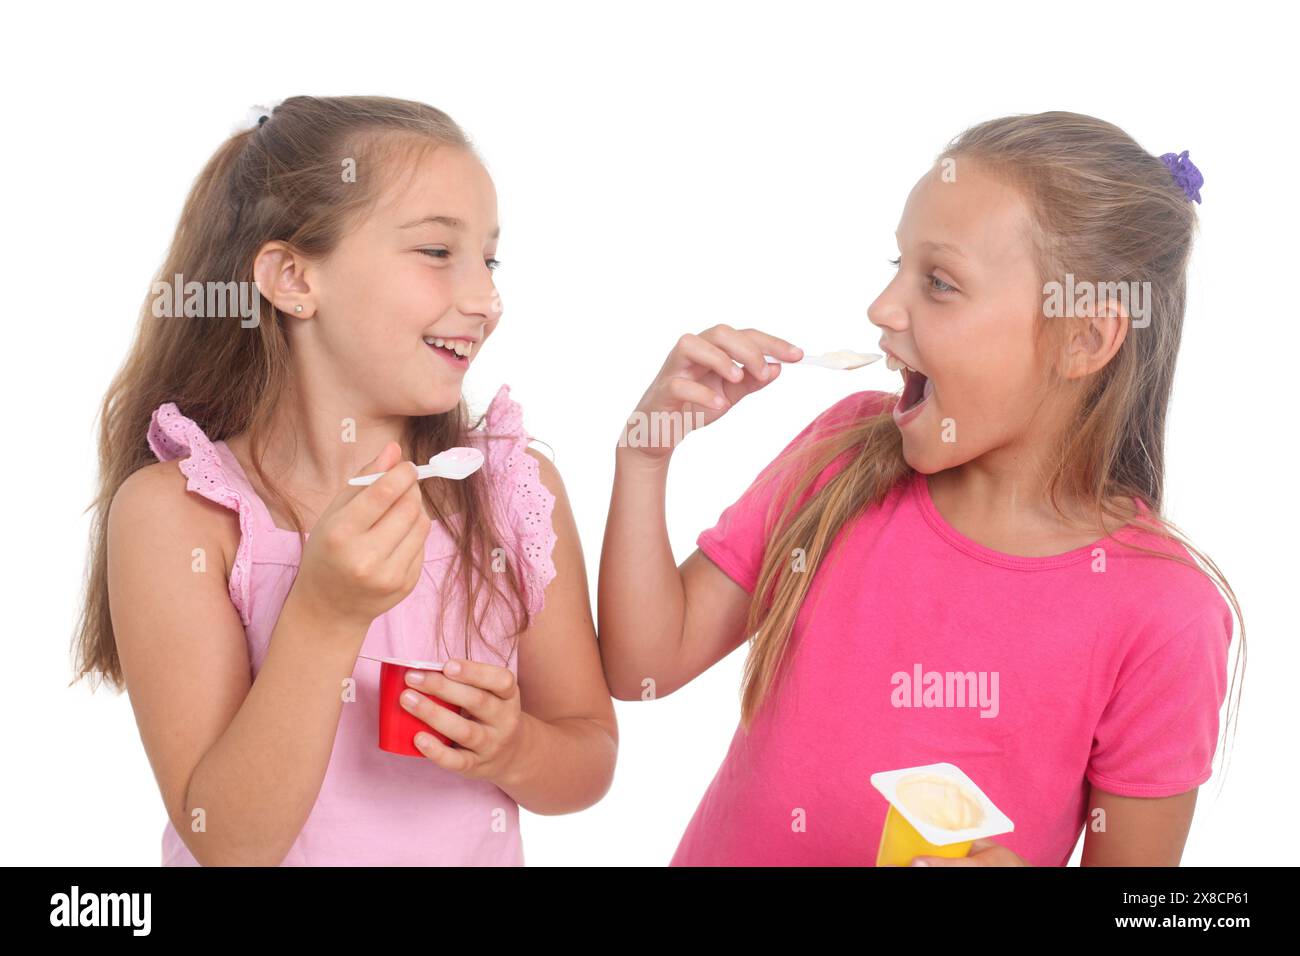 deux petites filles mignonnes mangeant du yaourt sur fond blanc Banque D'Images